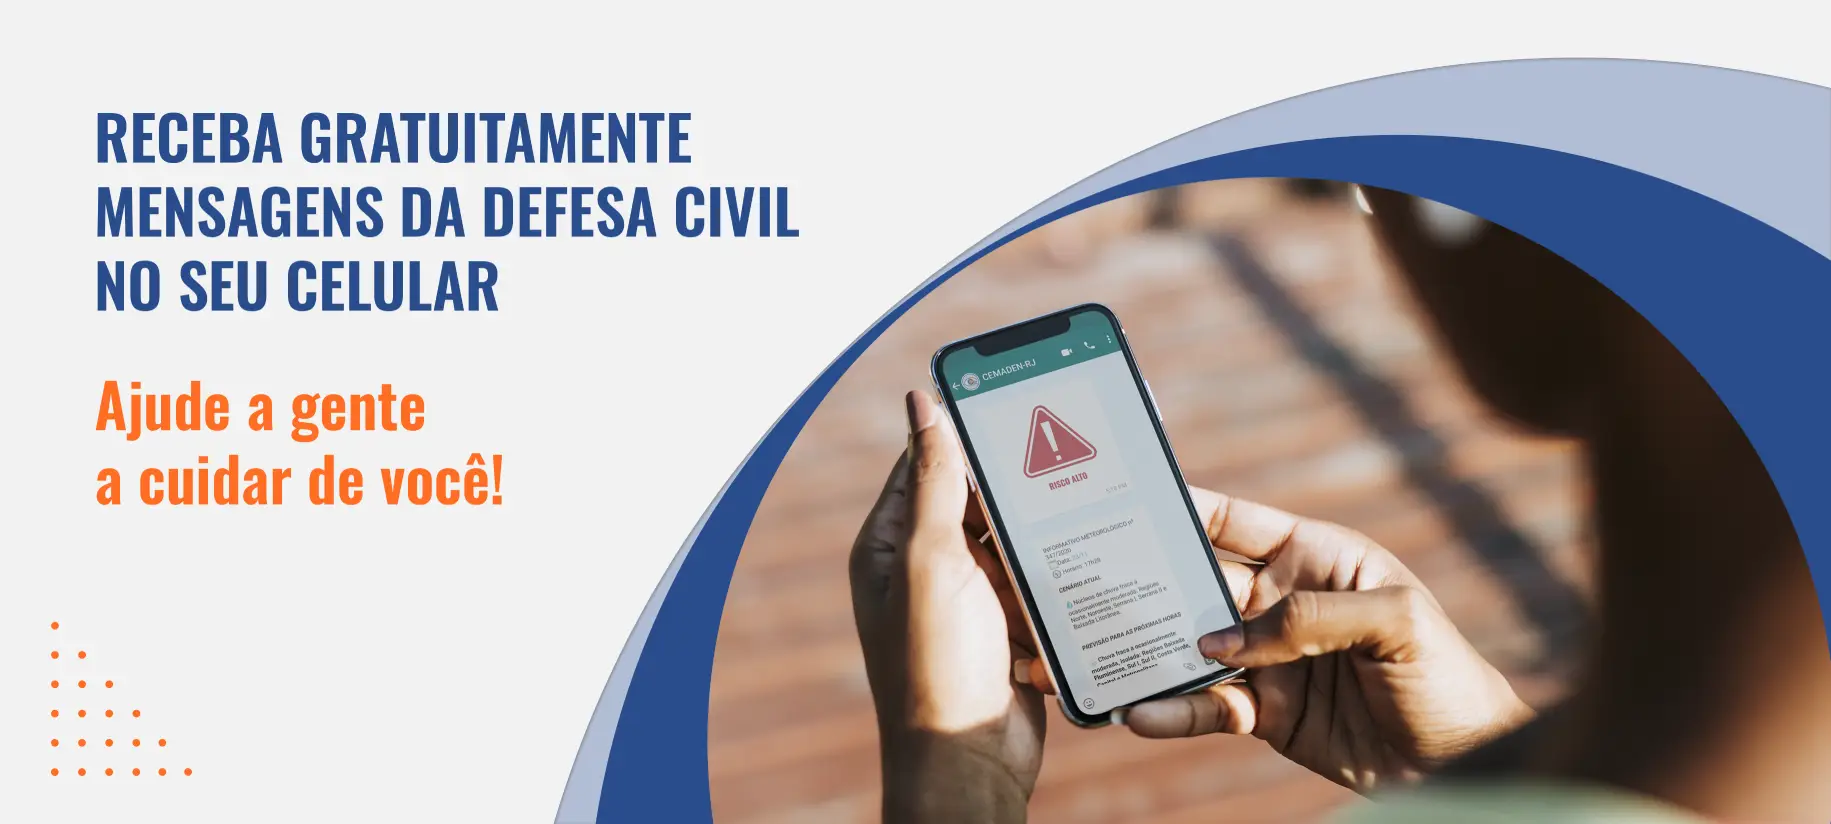 Receba gratuitamente mensagens da defesa civil no seu celular